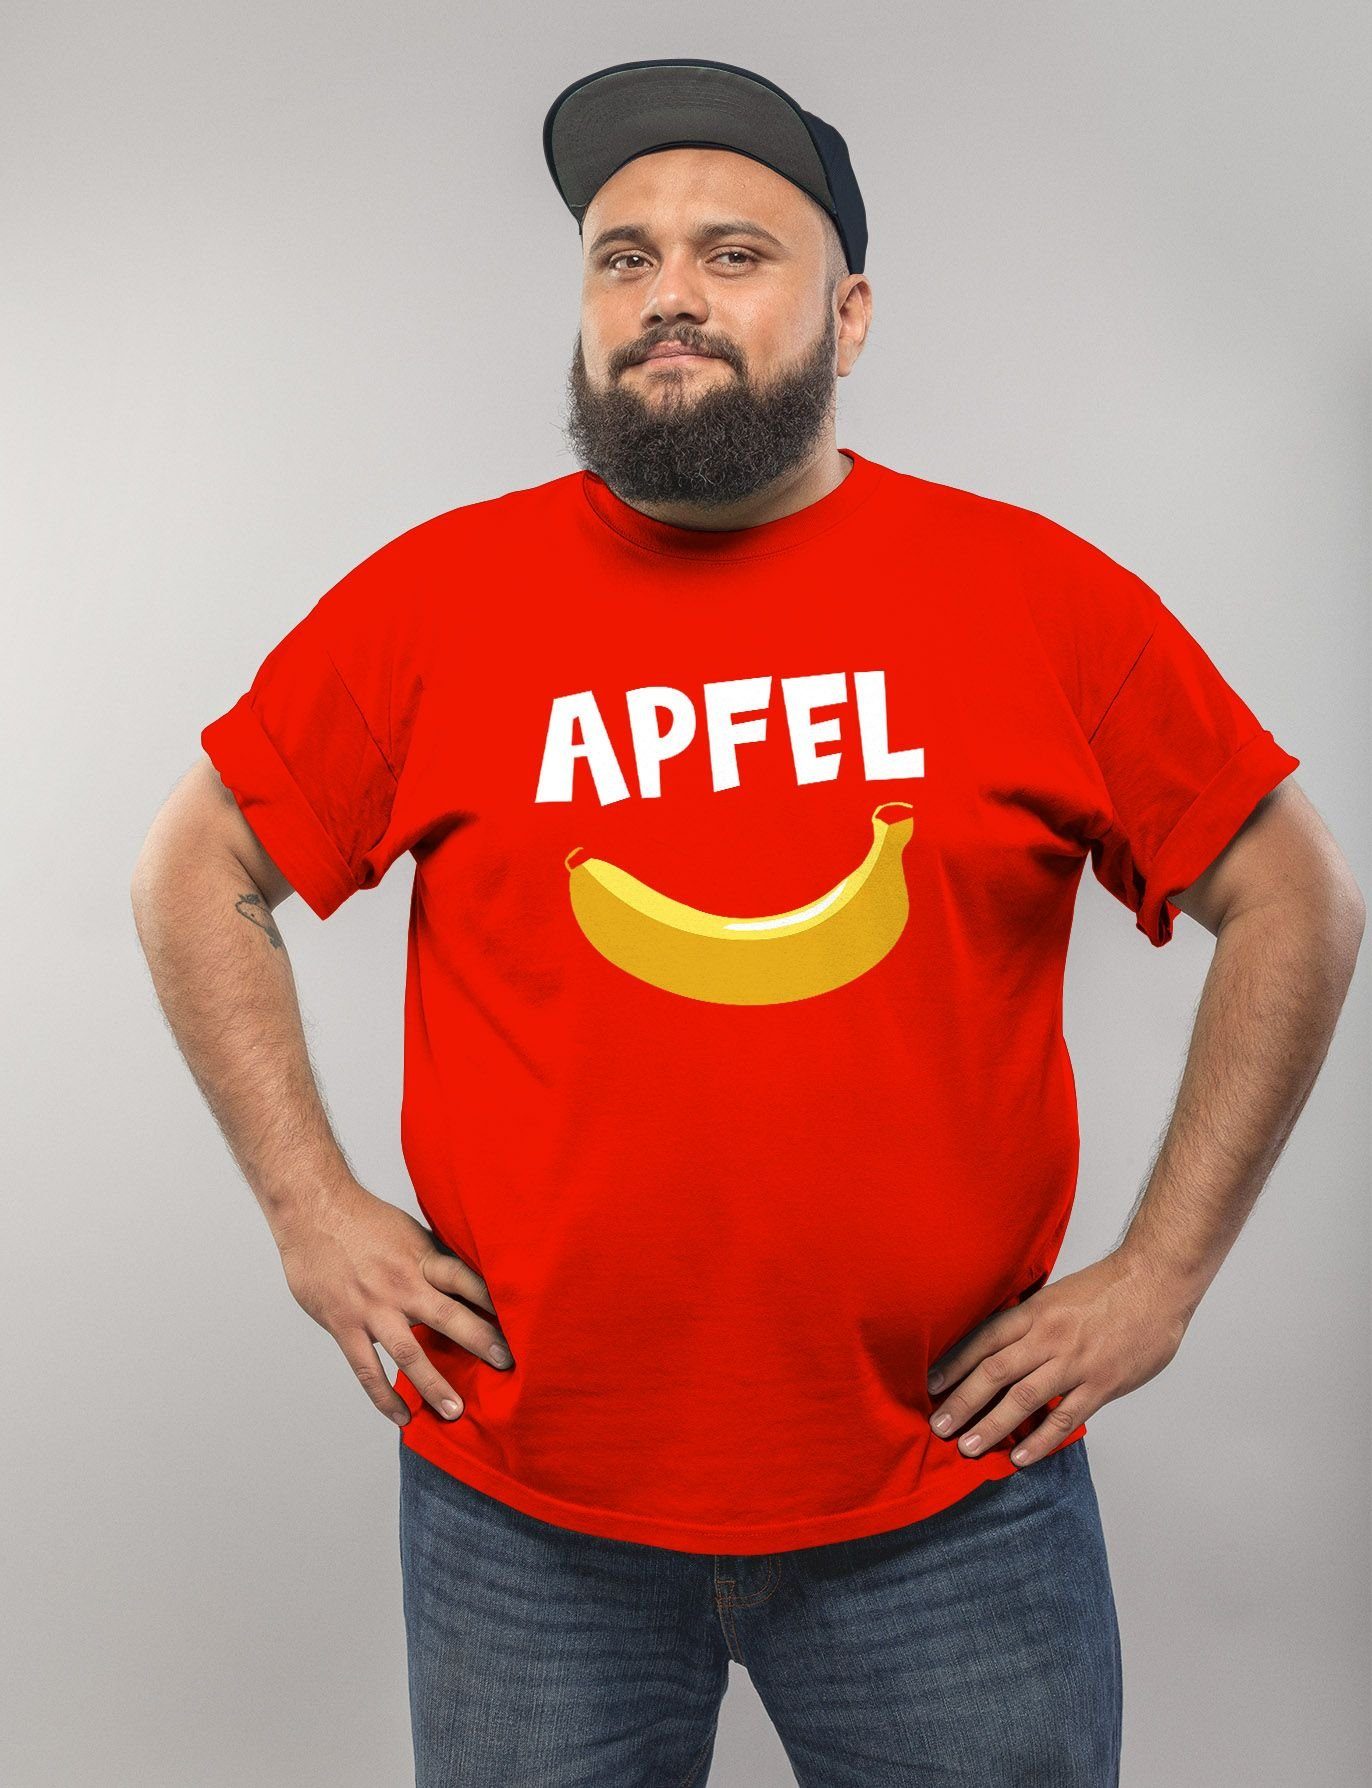 T-Shirt lustig Herren Fun-Shirt Apfel Print-Shirt Aufdruck Moonworks® MoonWorks mit lustiger Scherz rot Spruch Print Banane Witz